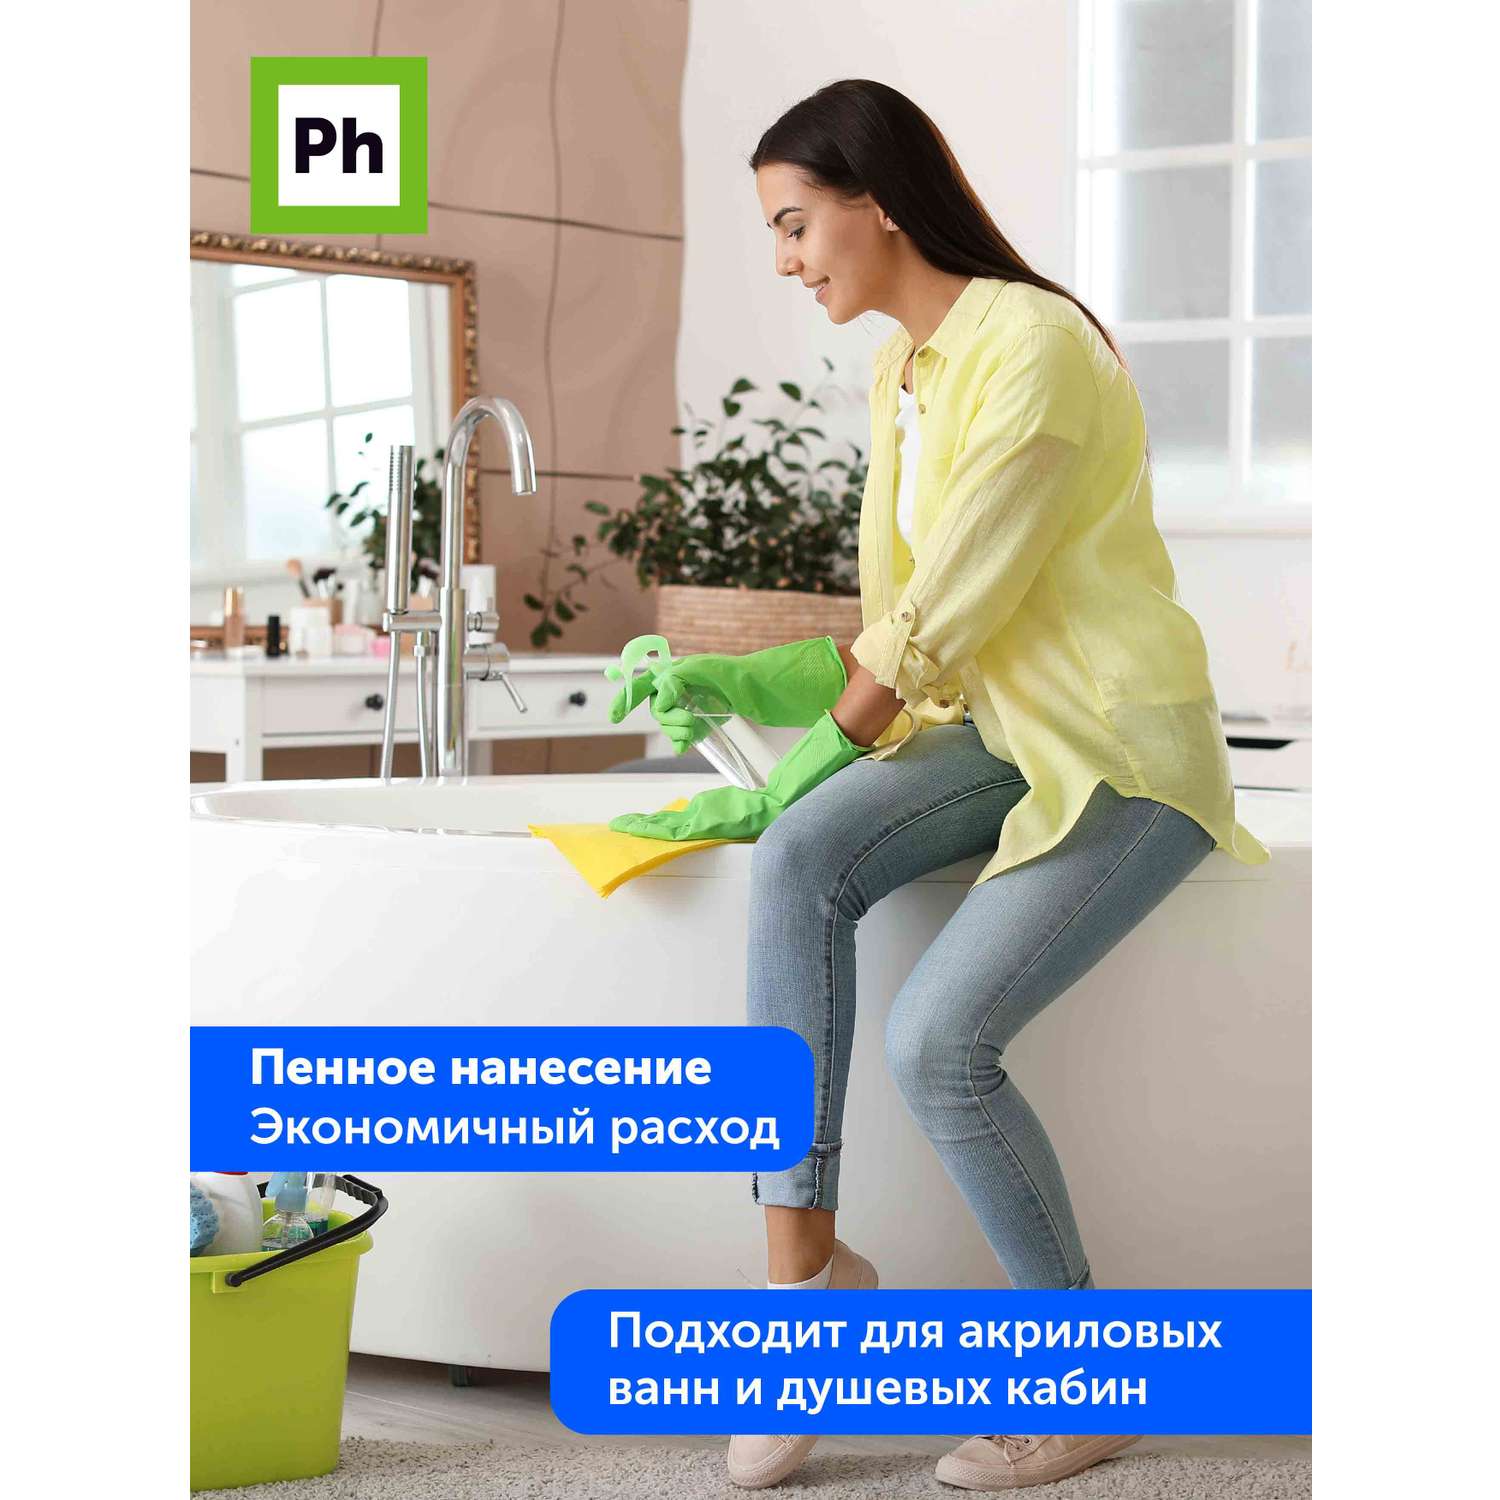 Набор средств для уборки Ph профессиональный Чистый дом 1 кухня ванная окна - фото 6